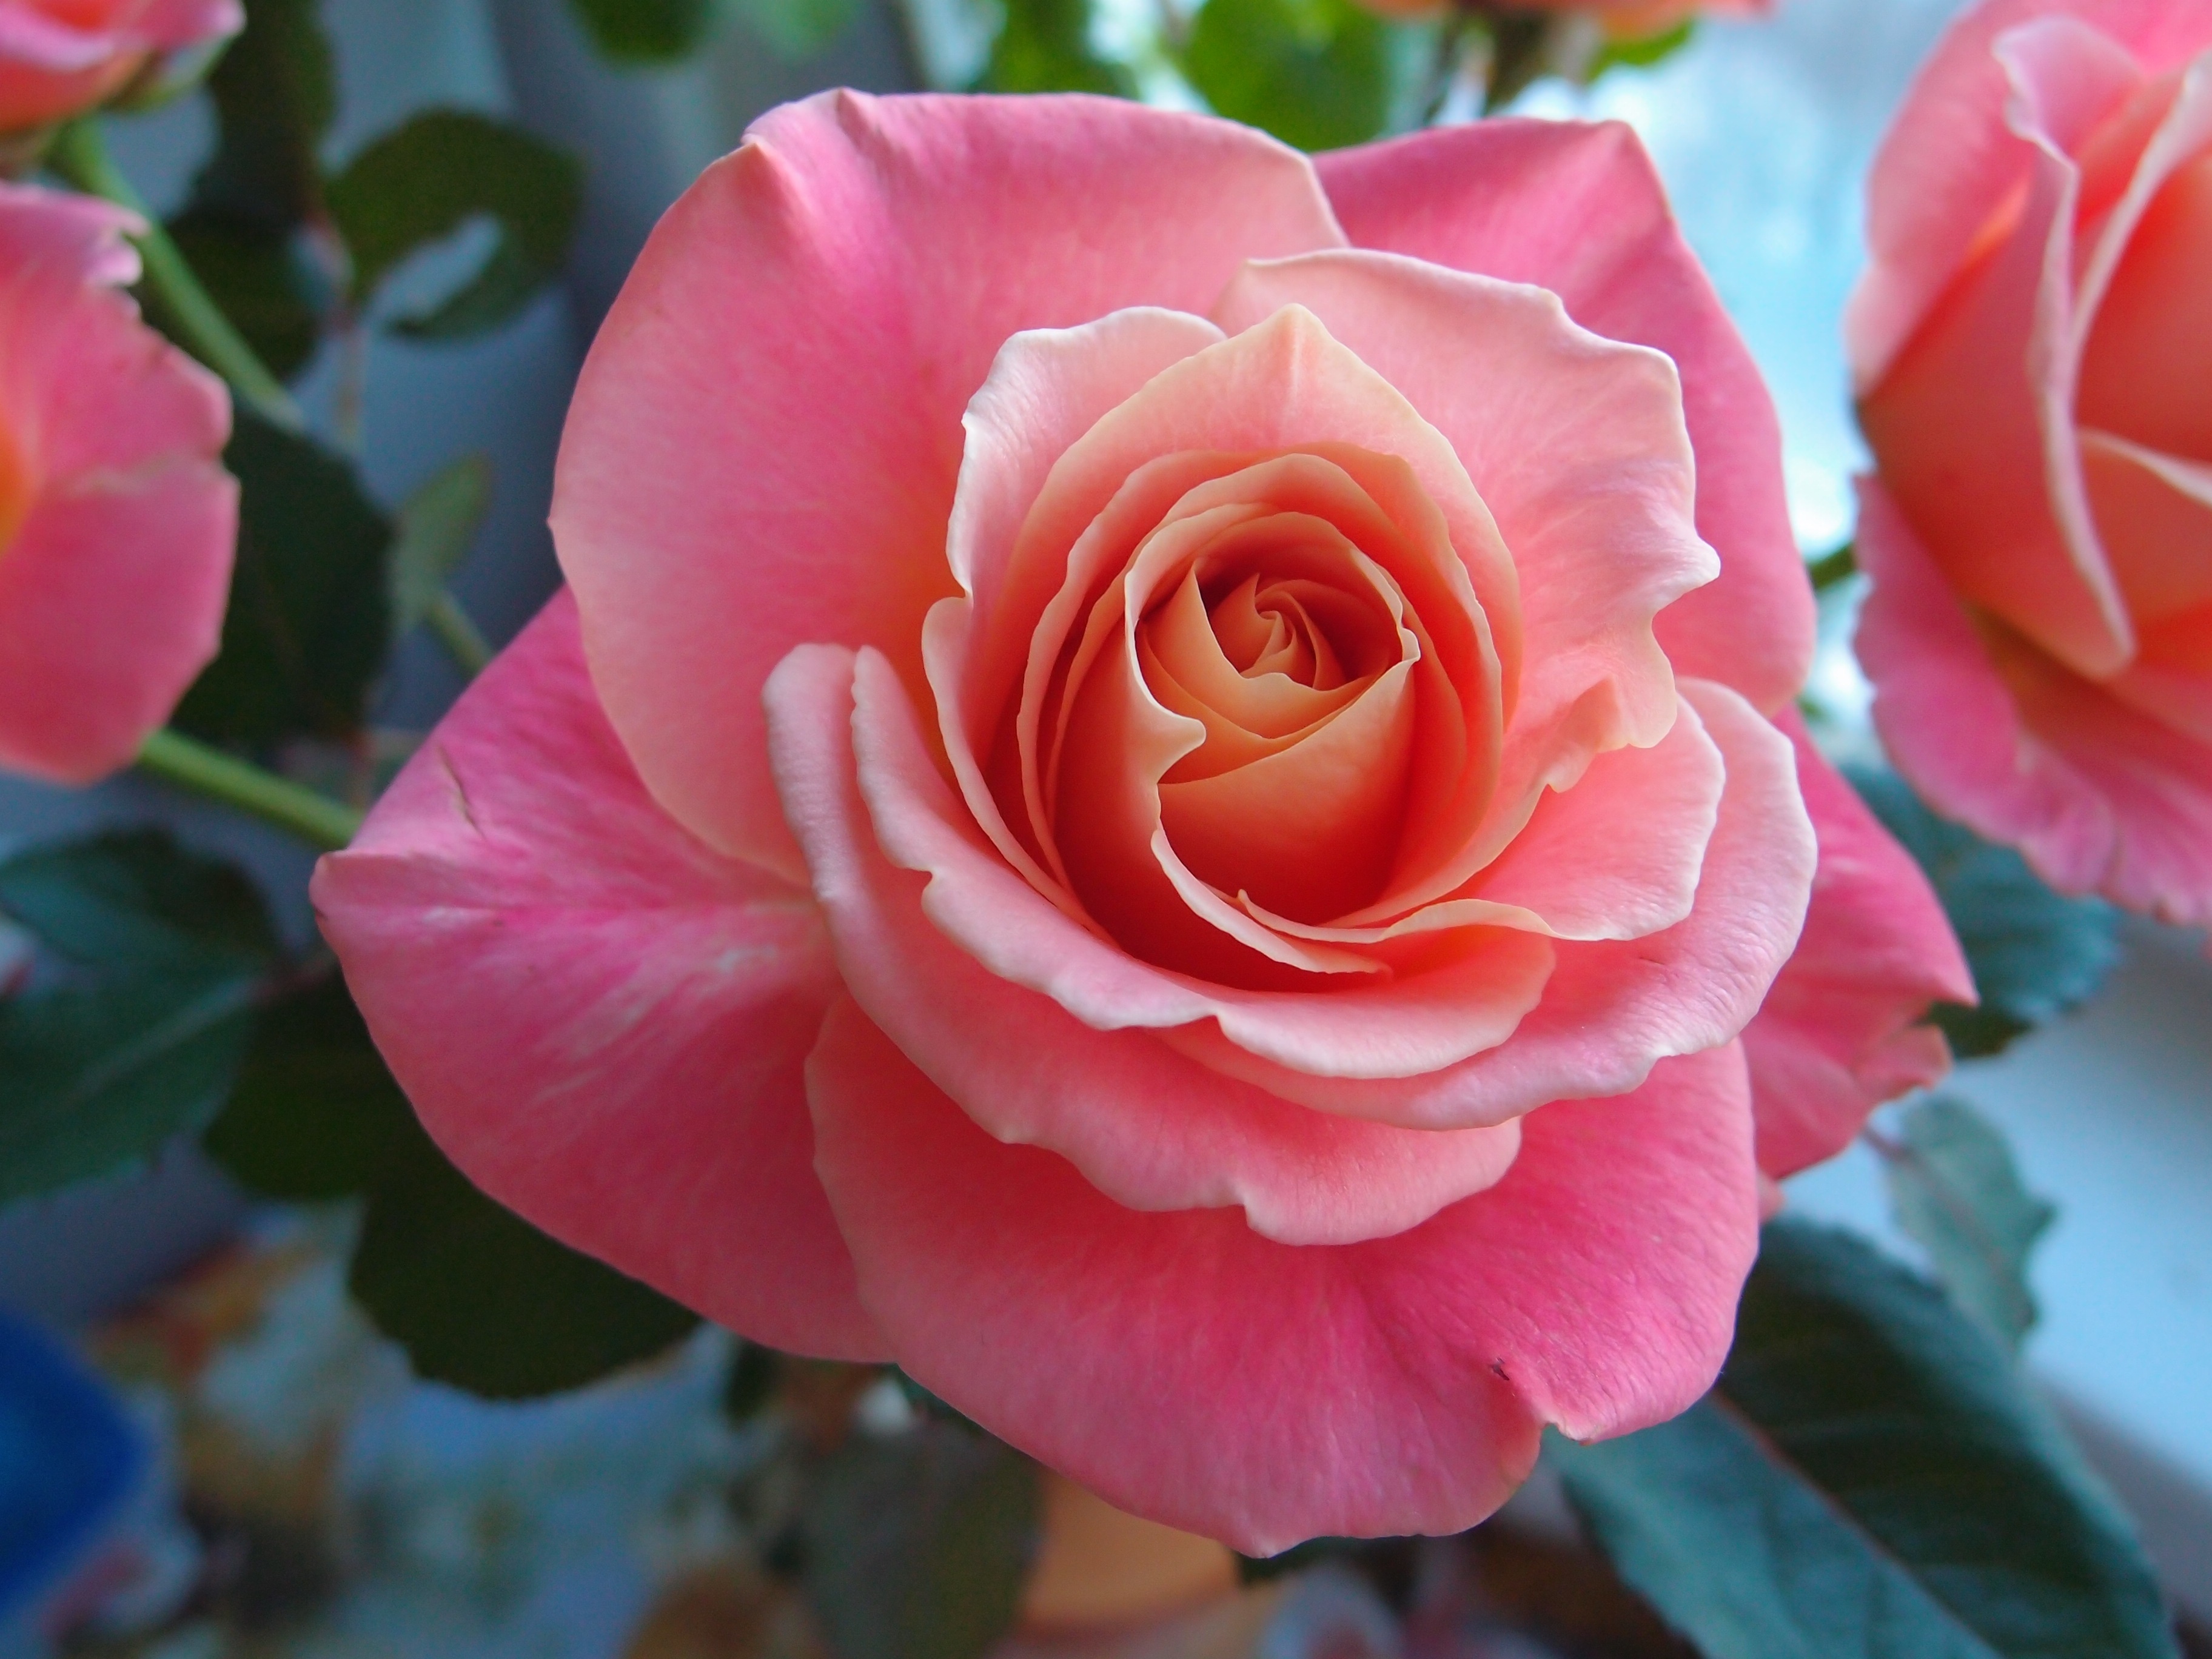 Скачать обои бесплатно Роза, Земля/природа, Розовый Цветок, Розовая Роза, Макрос картинка на рабочий стол ПК